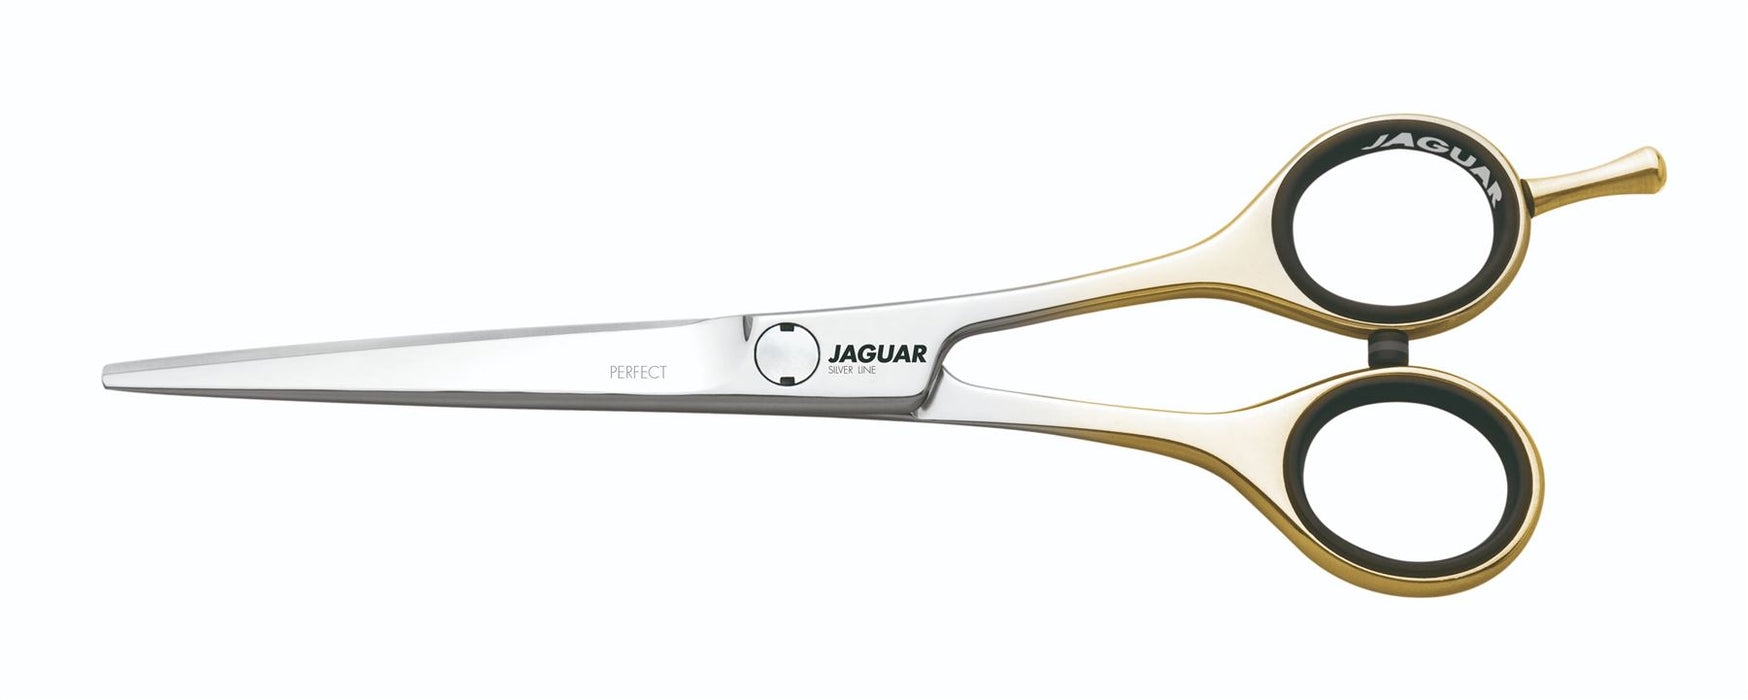 Ciseaux de coiffure Jaguar Perfect 6" - Placage or 22 carats